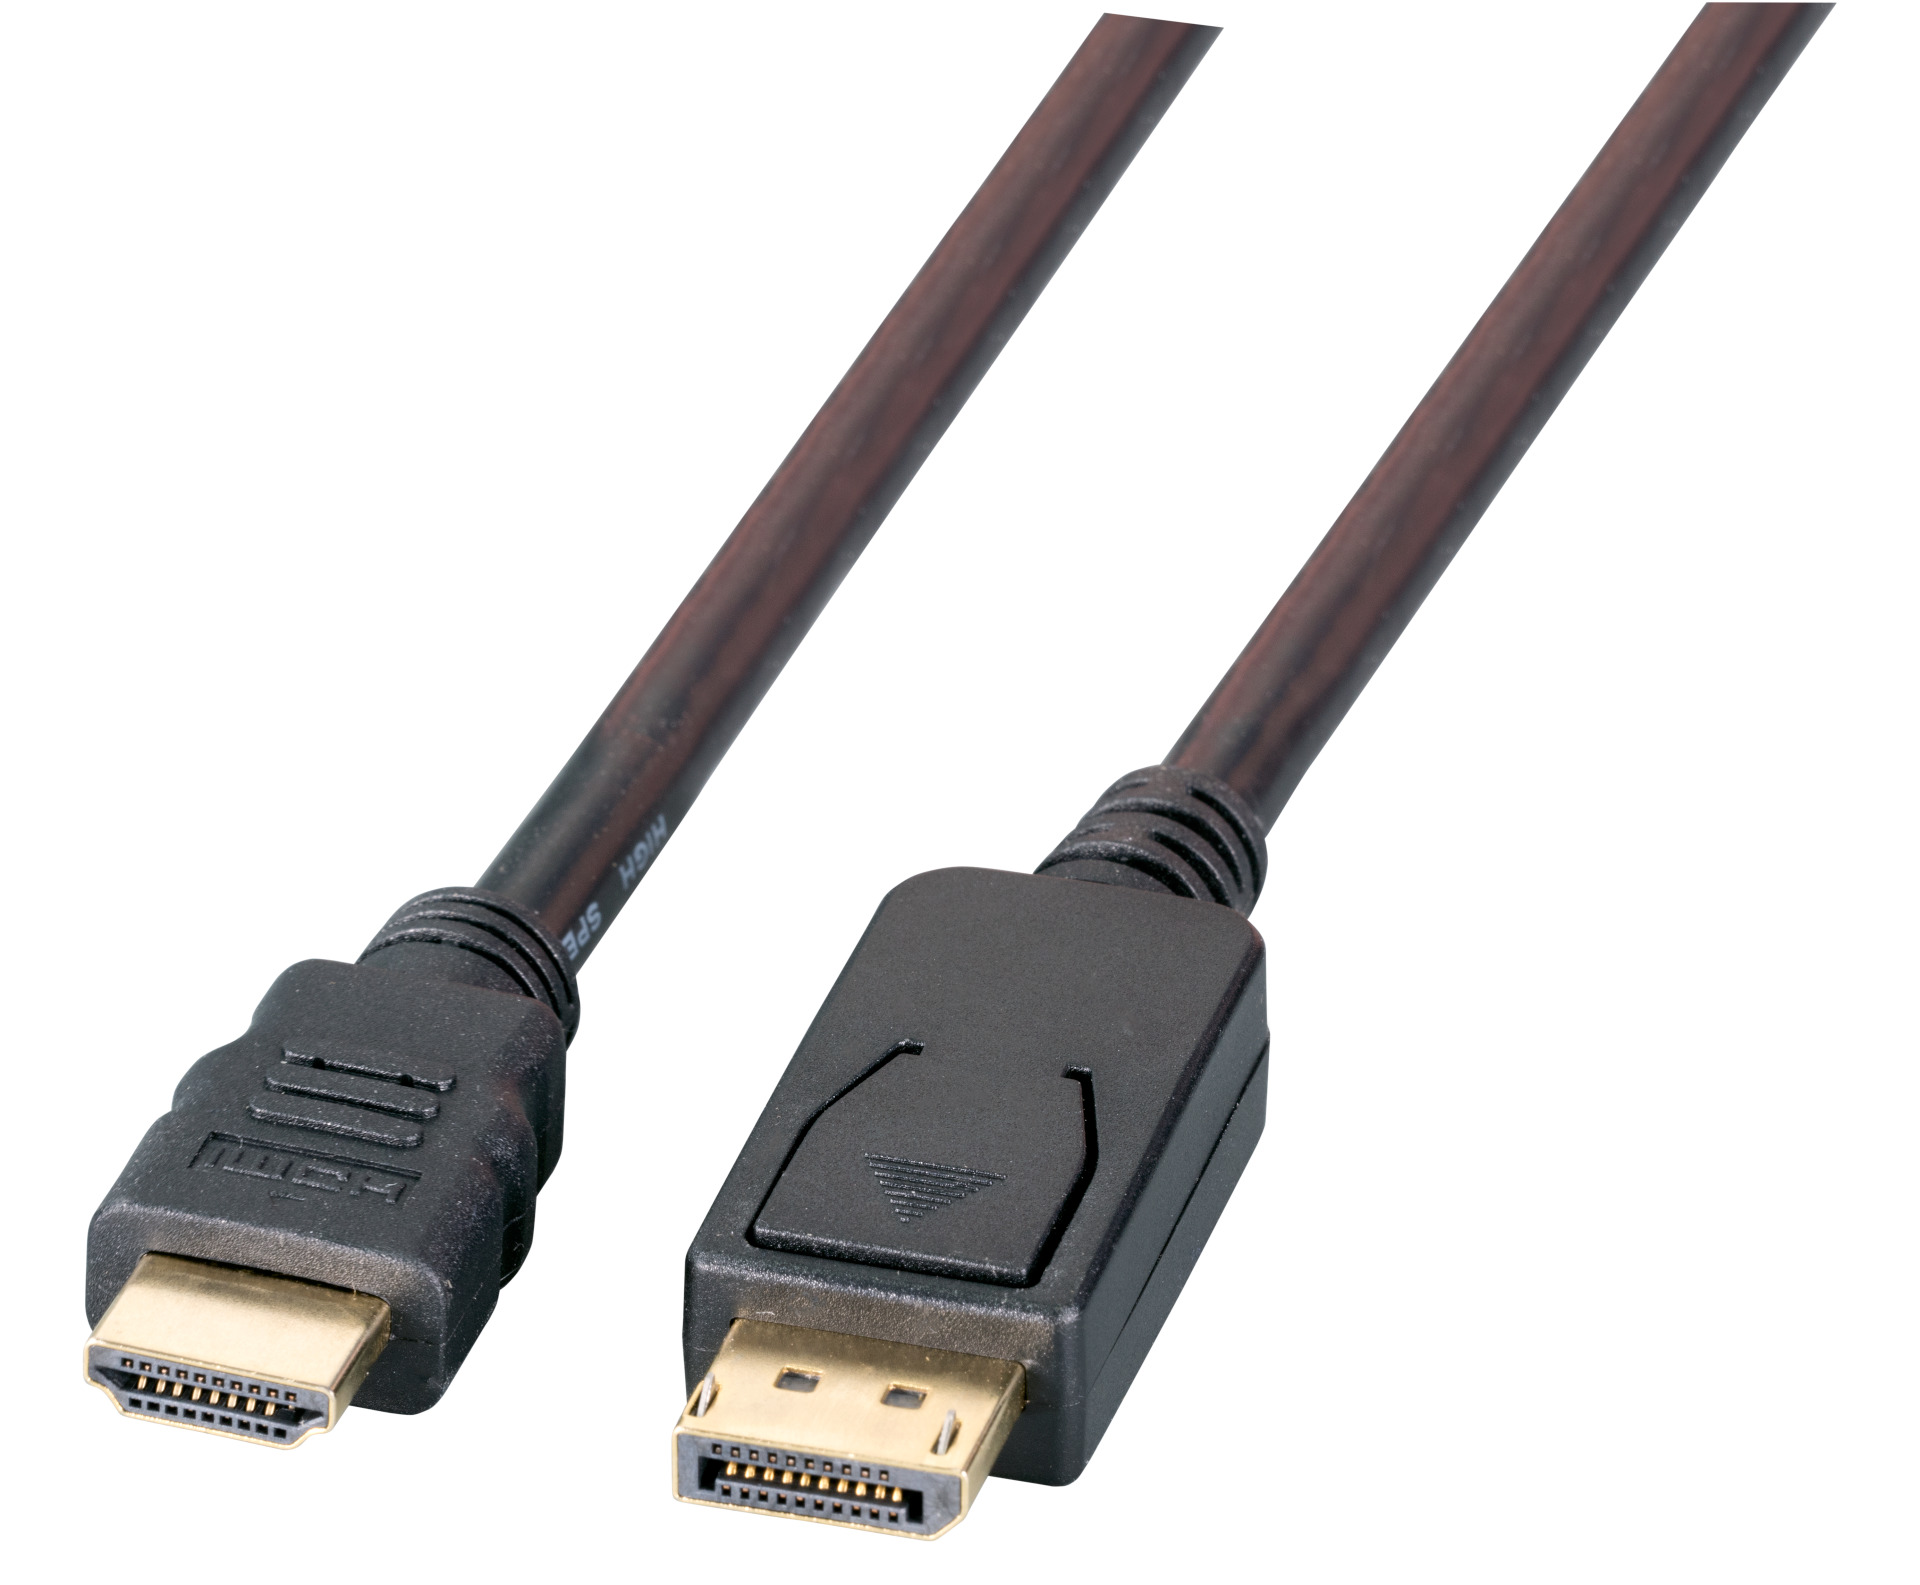 Micro HDMI Male to HDMI Female Video Adapter 10 in. - Black - Micro Center